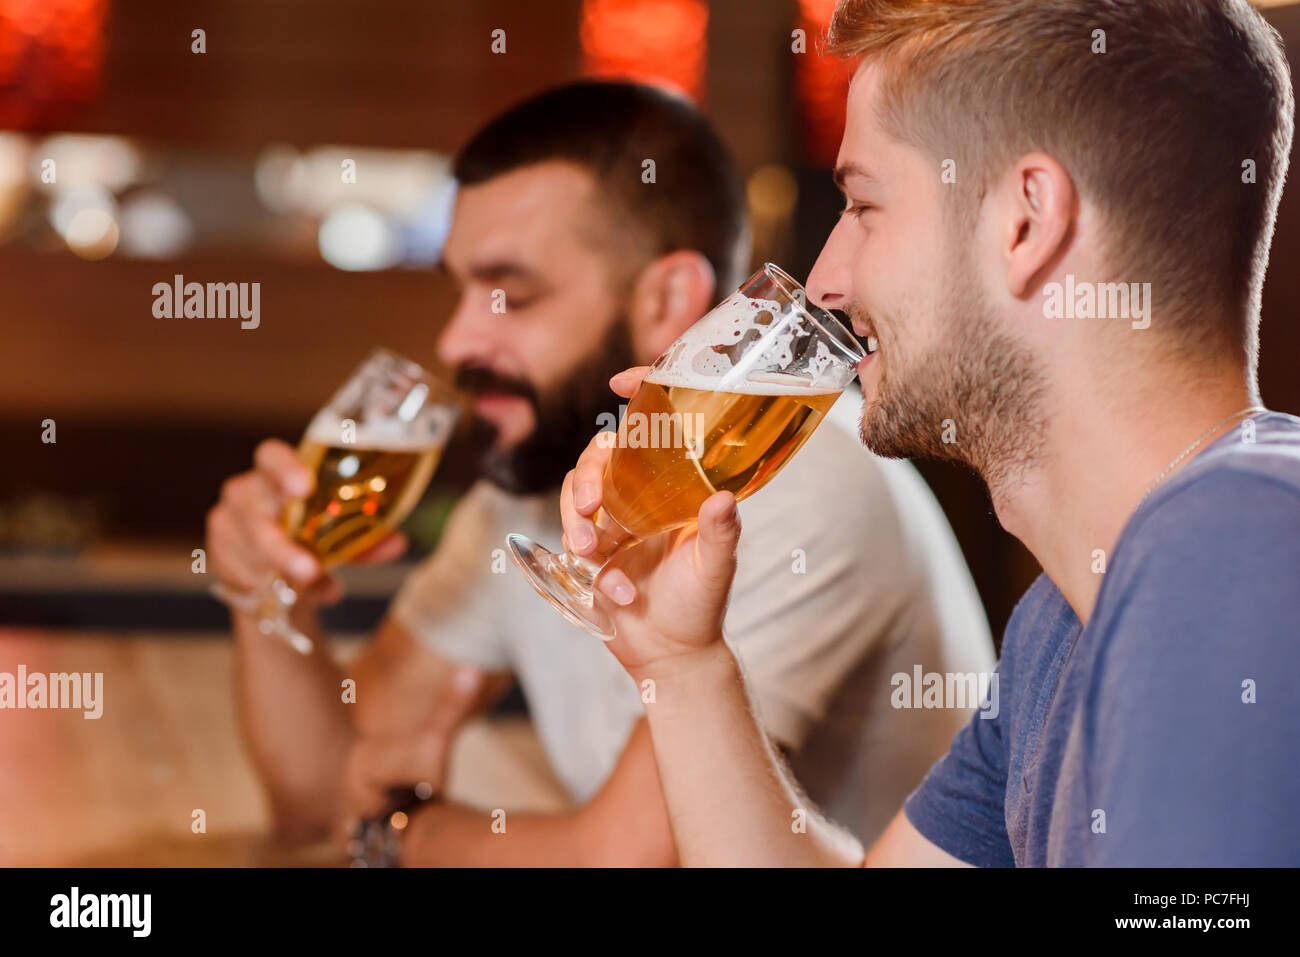 Vue latérale des deux hommes barbus tenant des verres de bière savoureuse et de boire. Deux joyeux amis assis dans un café ou un restaurant et s'amuser. Concept de gastronomie et de loisirs. Banque D'Images